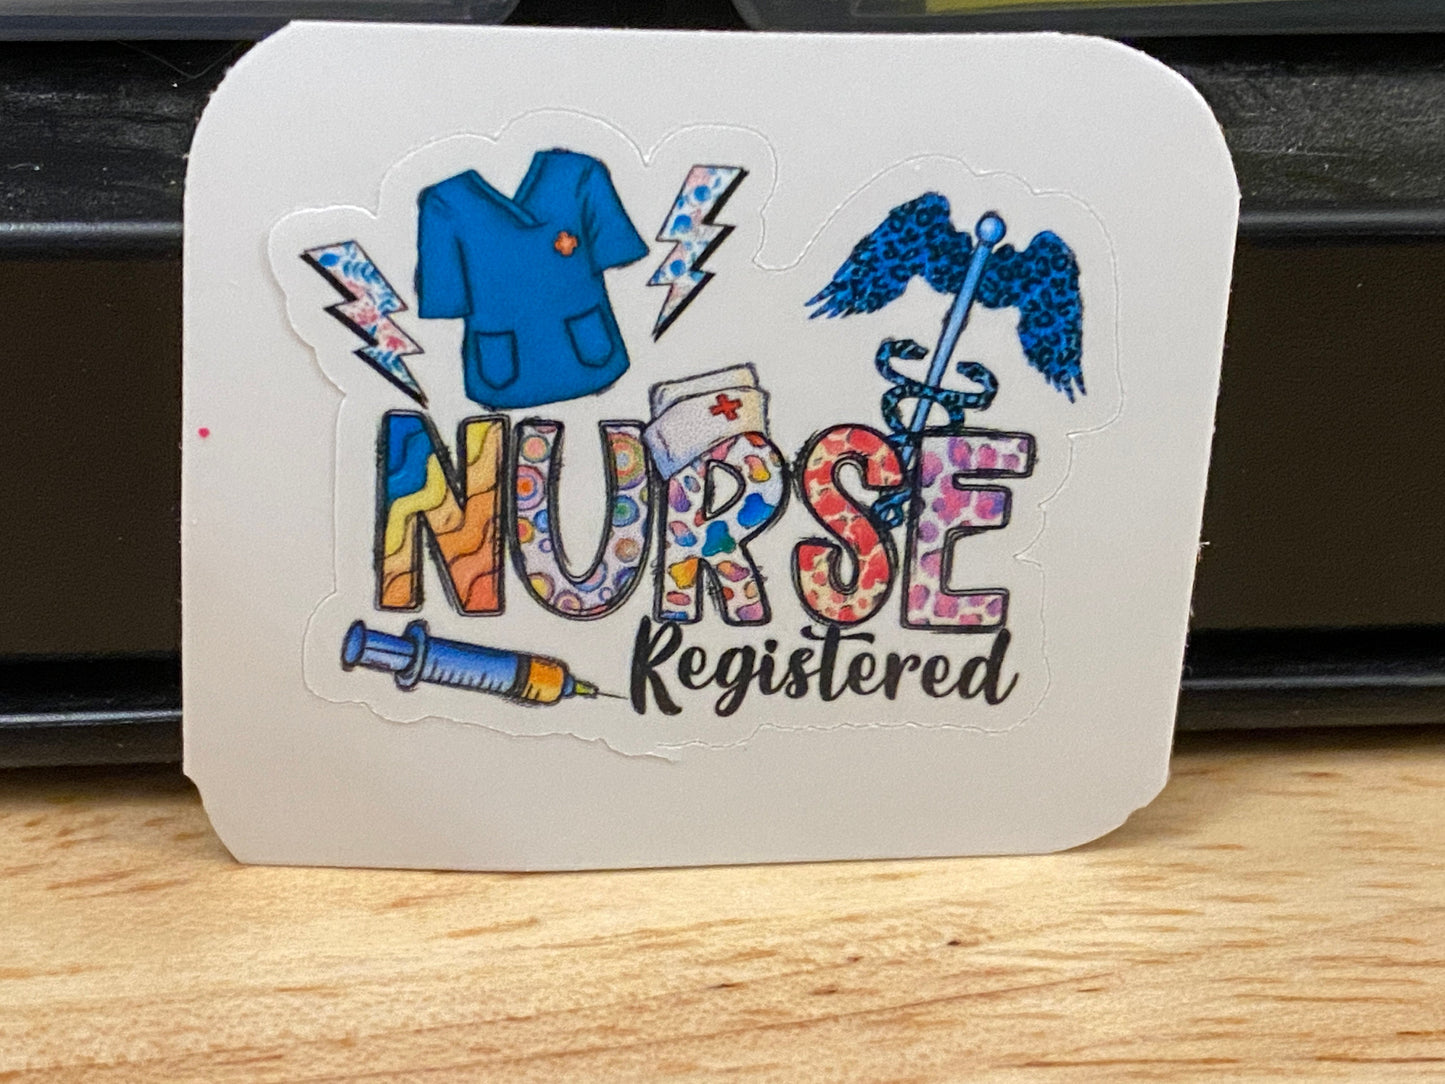 Scrubs Registered Nurse Sticker, RN Sticker, Medical STICKER, Cute Medical Design Sticker. Registered Nurse with Scrubs Sticker